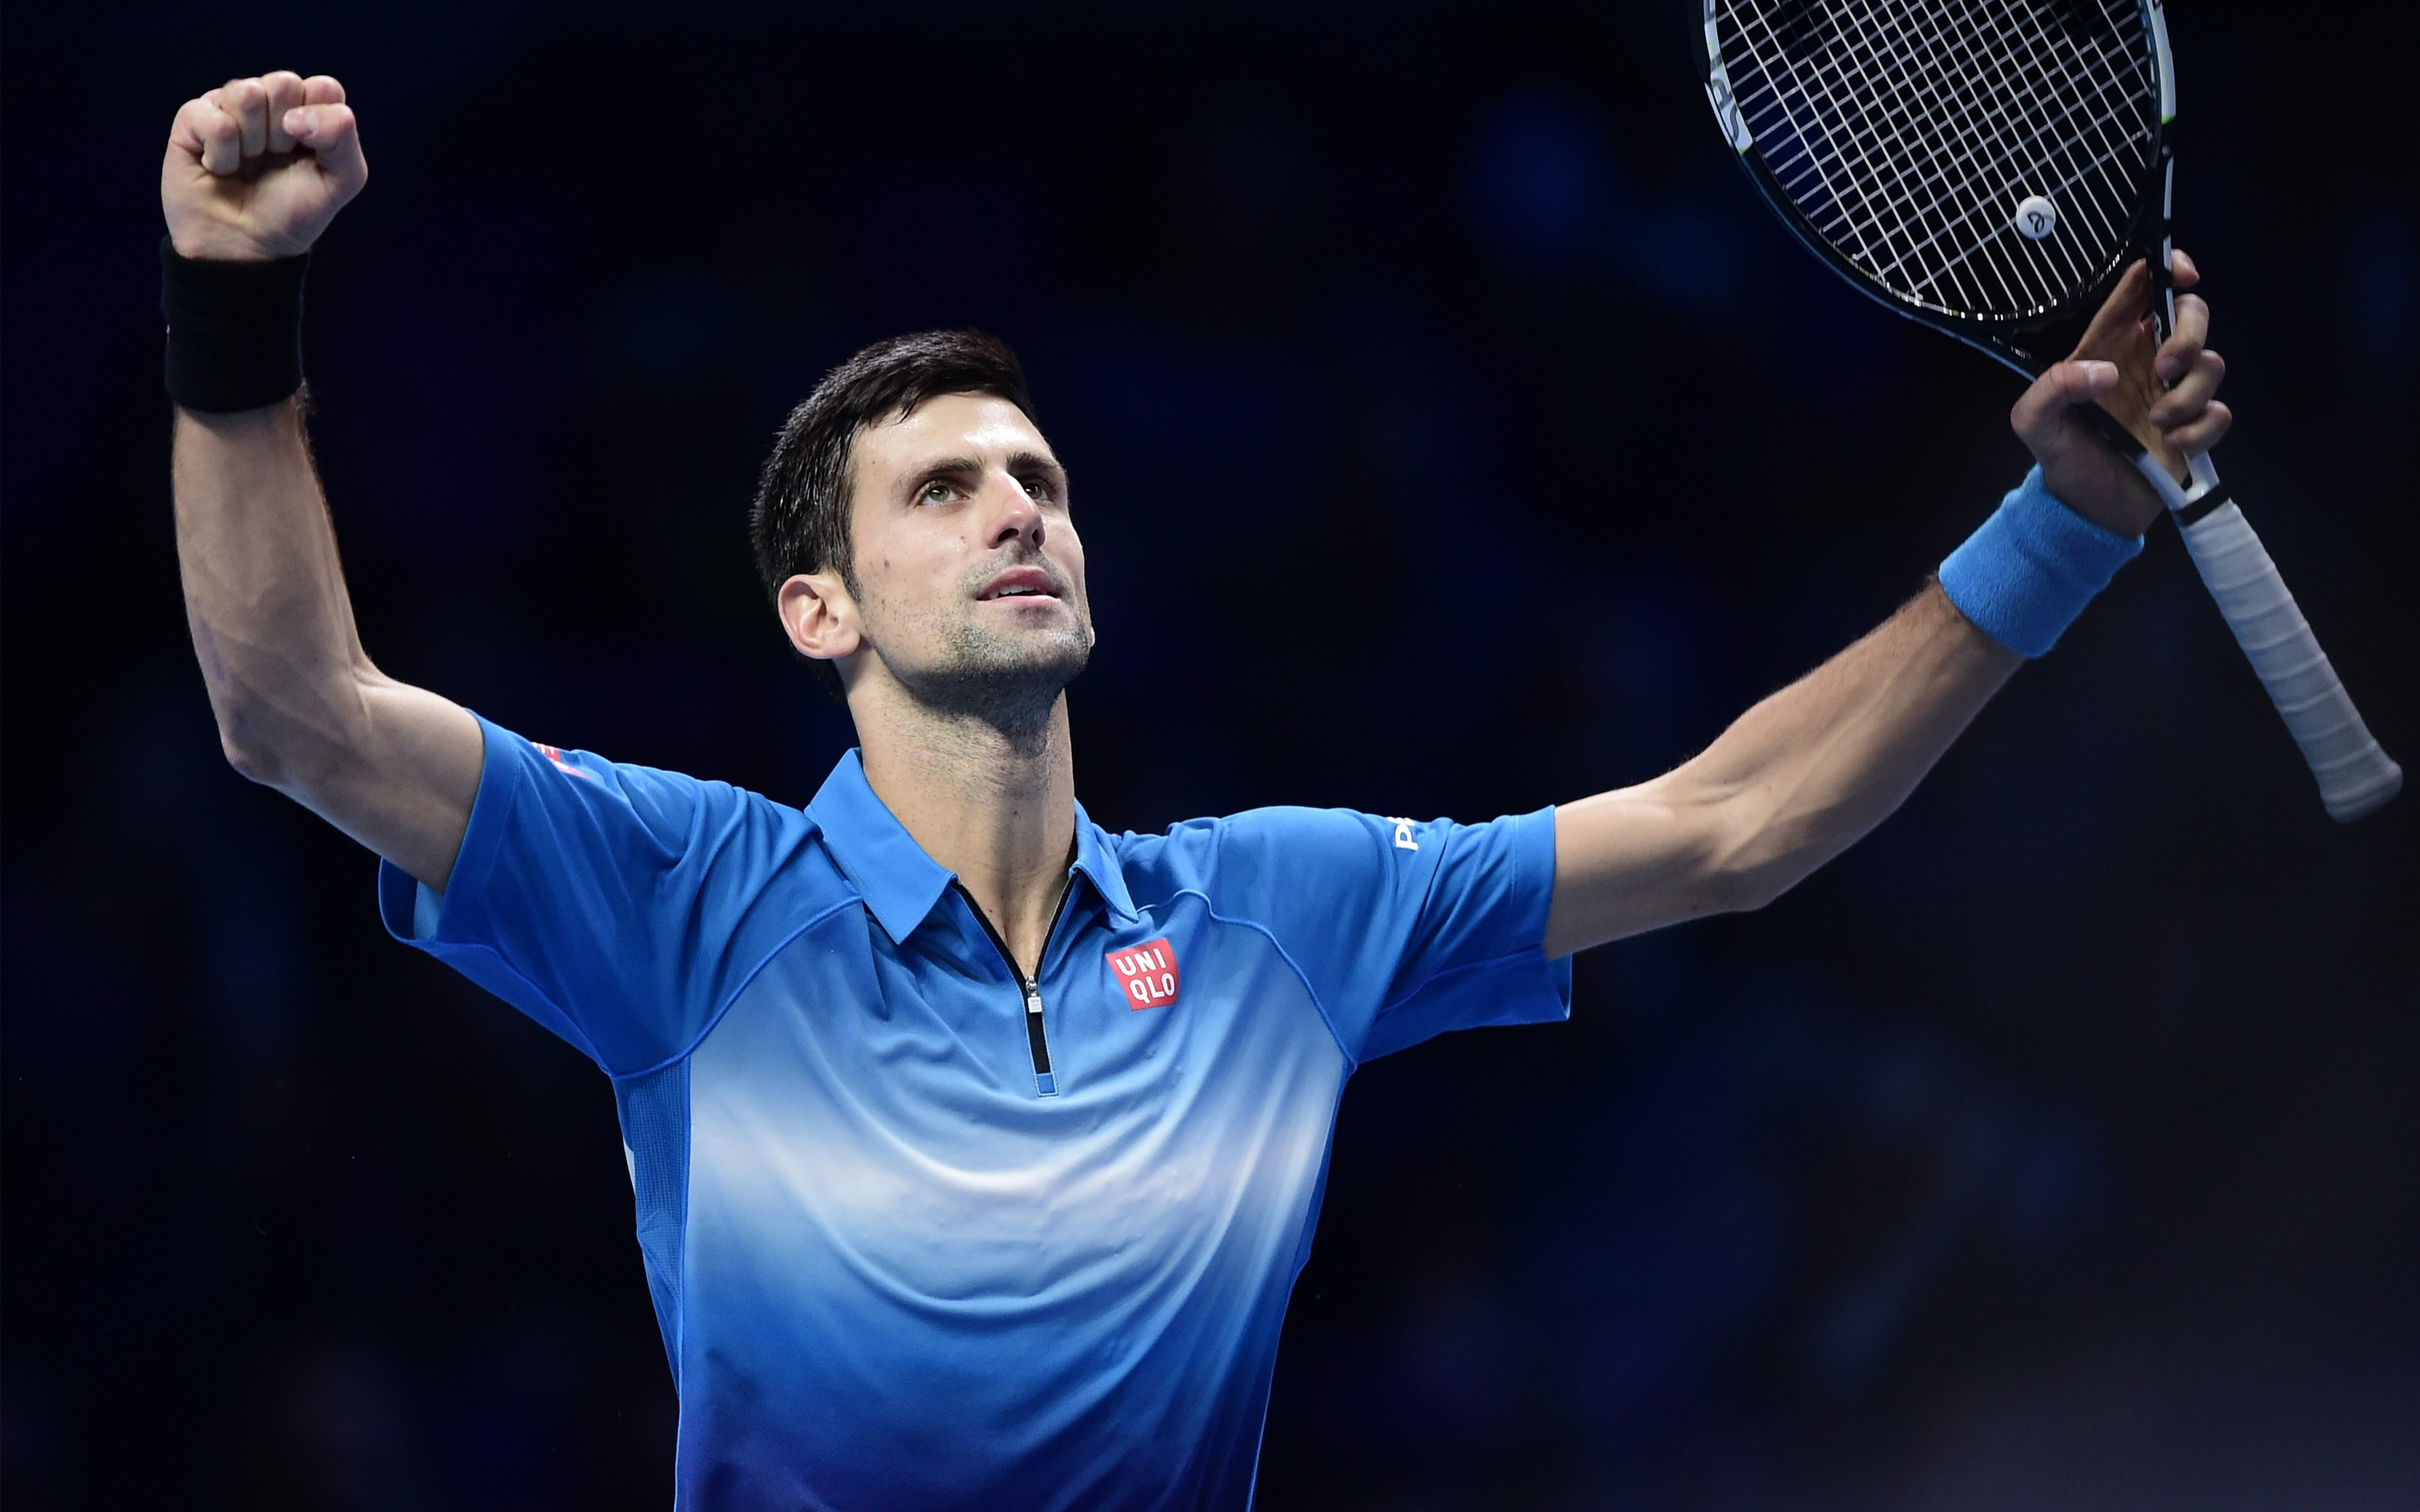 Novak Djokovic232976810428 - Novak Djokovic23 - Novak, Federer, Djokovic23